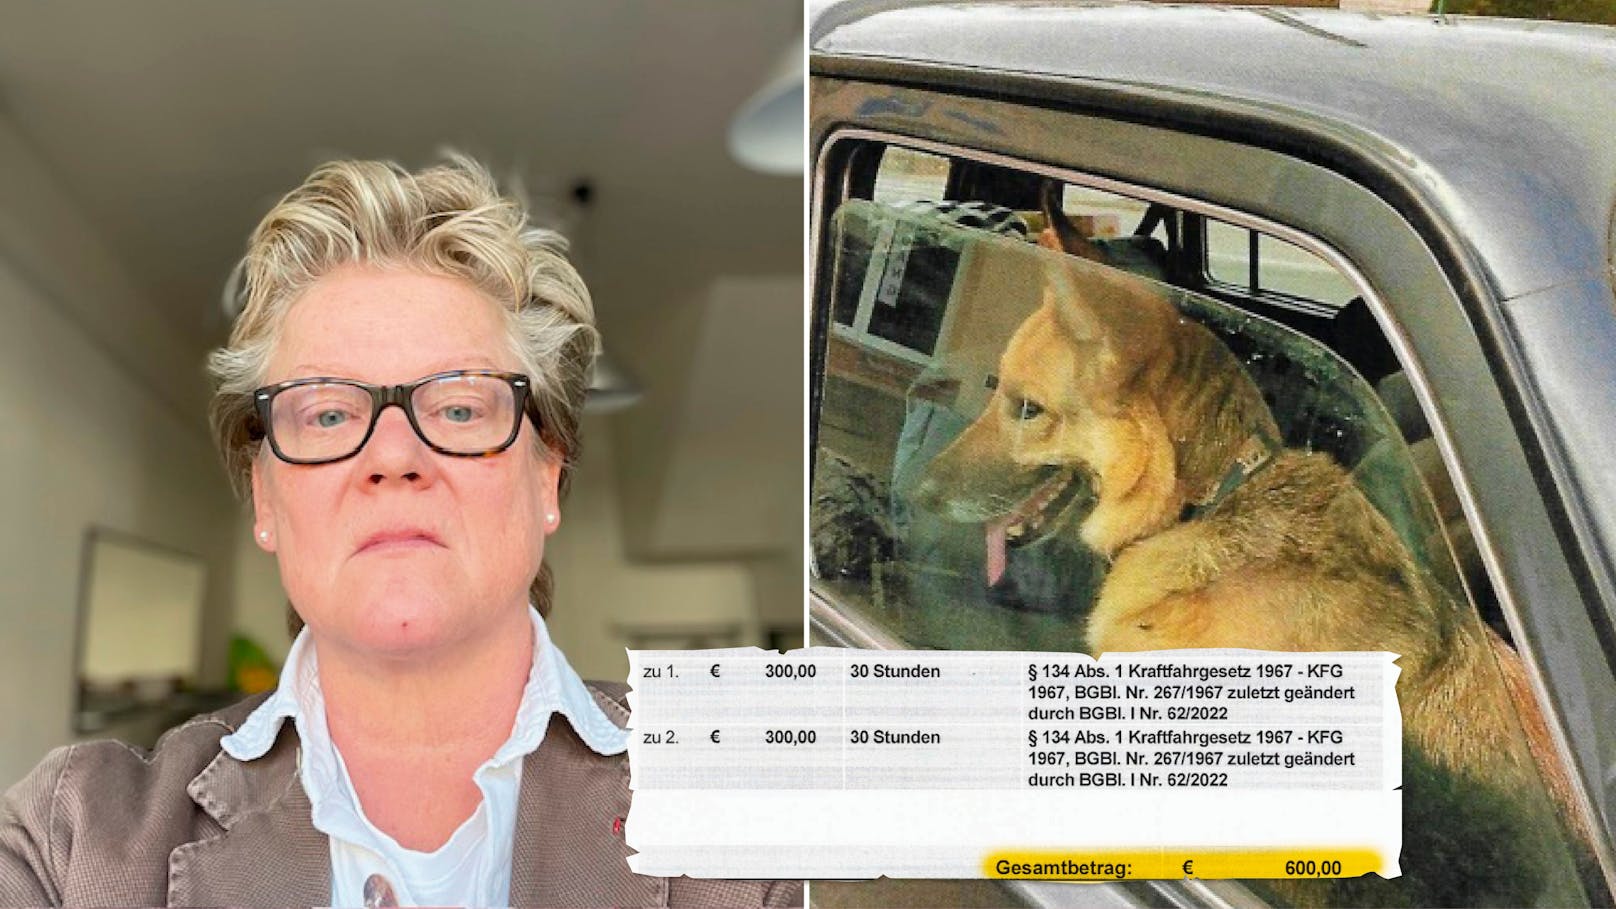 600 € wegen Hunden – So will Juristin Strafe bekämpfen